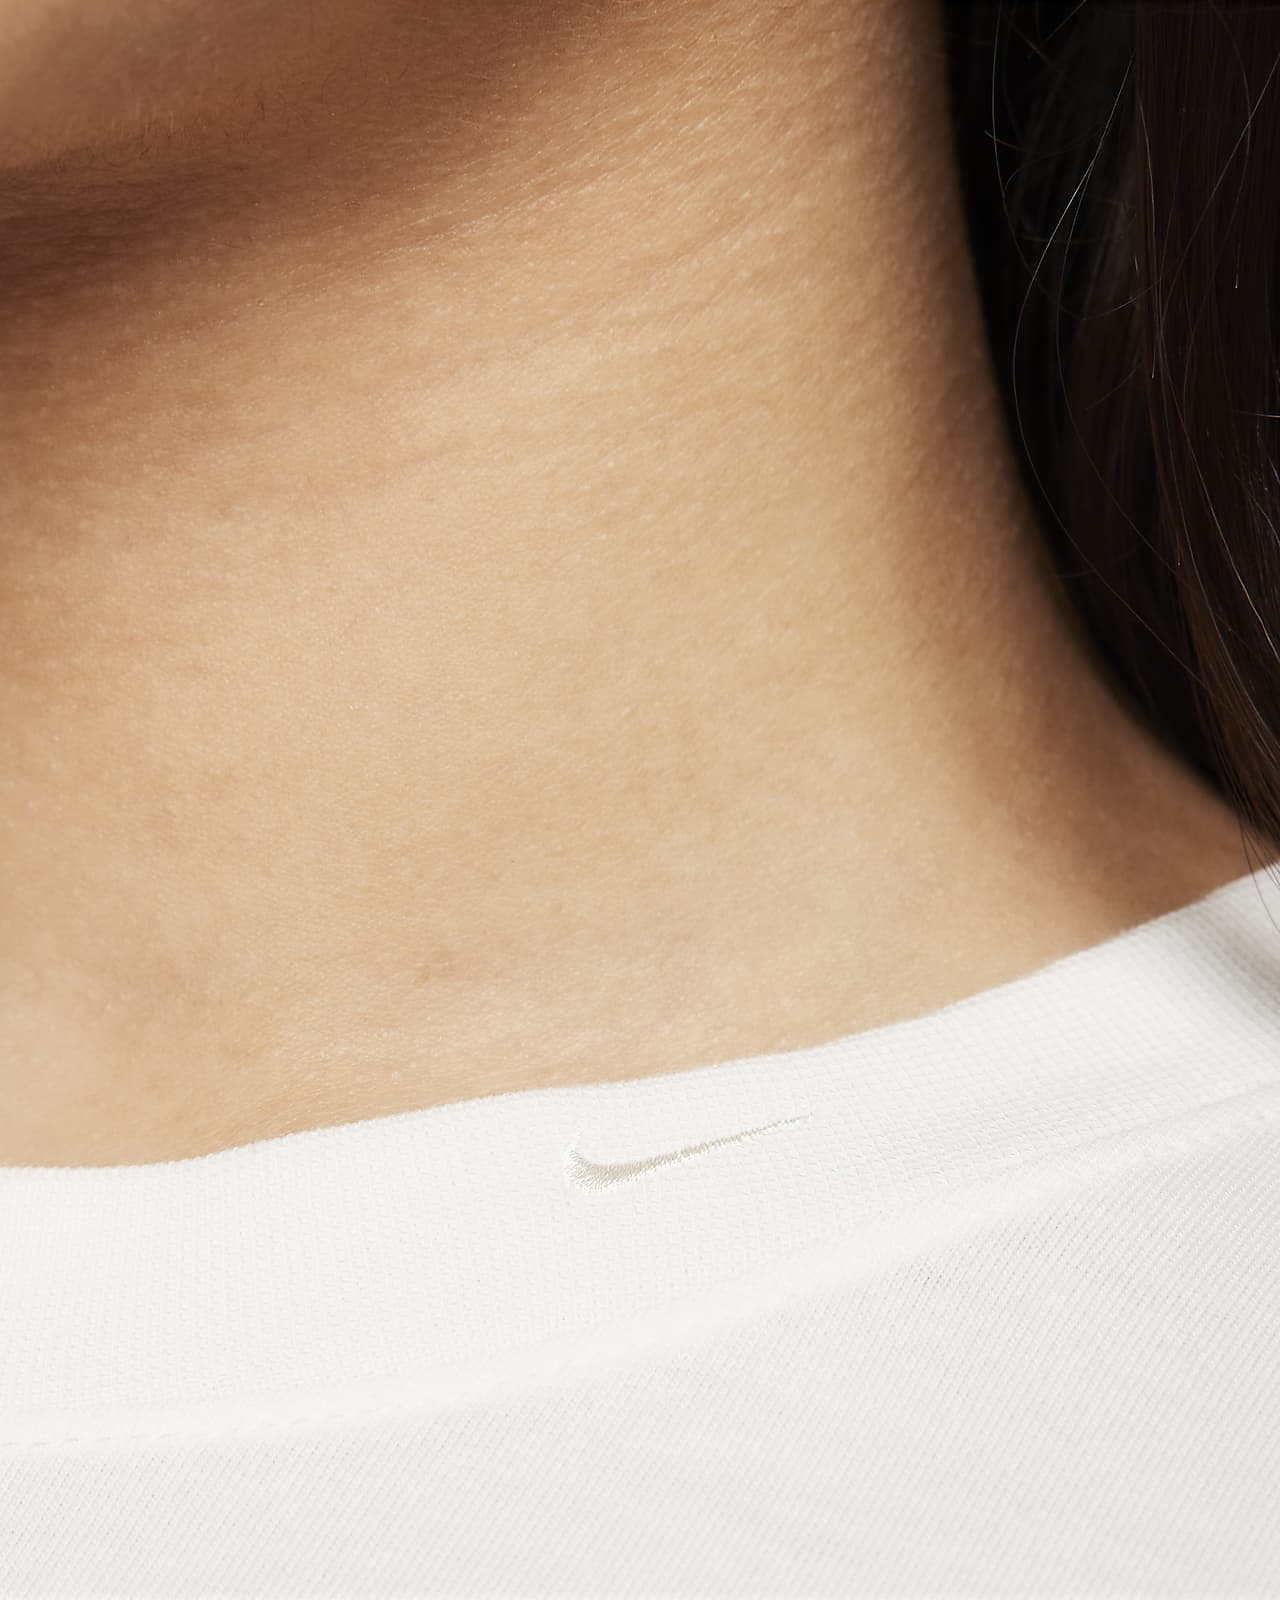 Nike Sportswear Essential Women's Cropped Logo T-Shirt – SoleFly